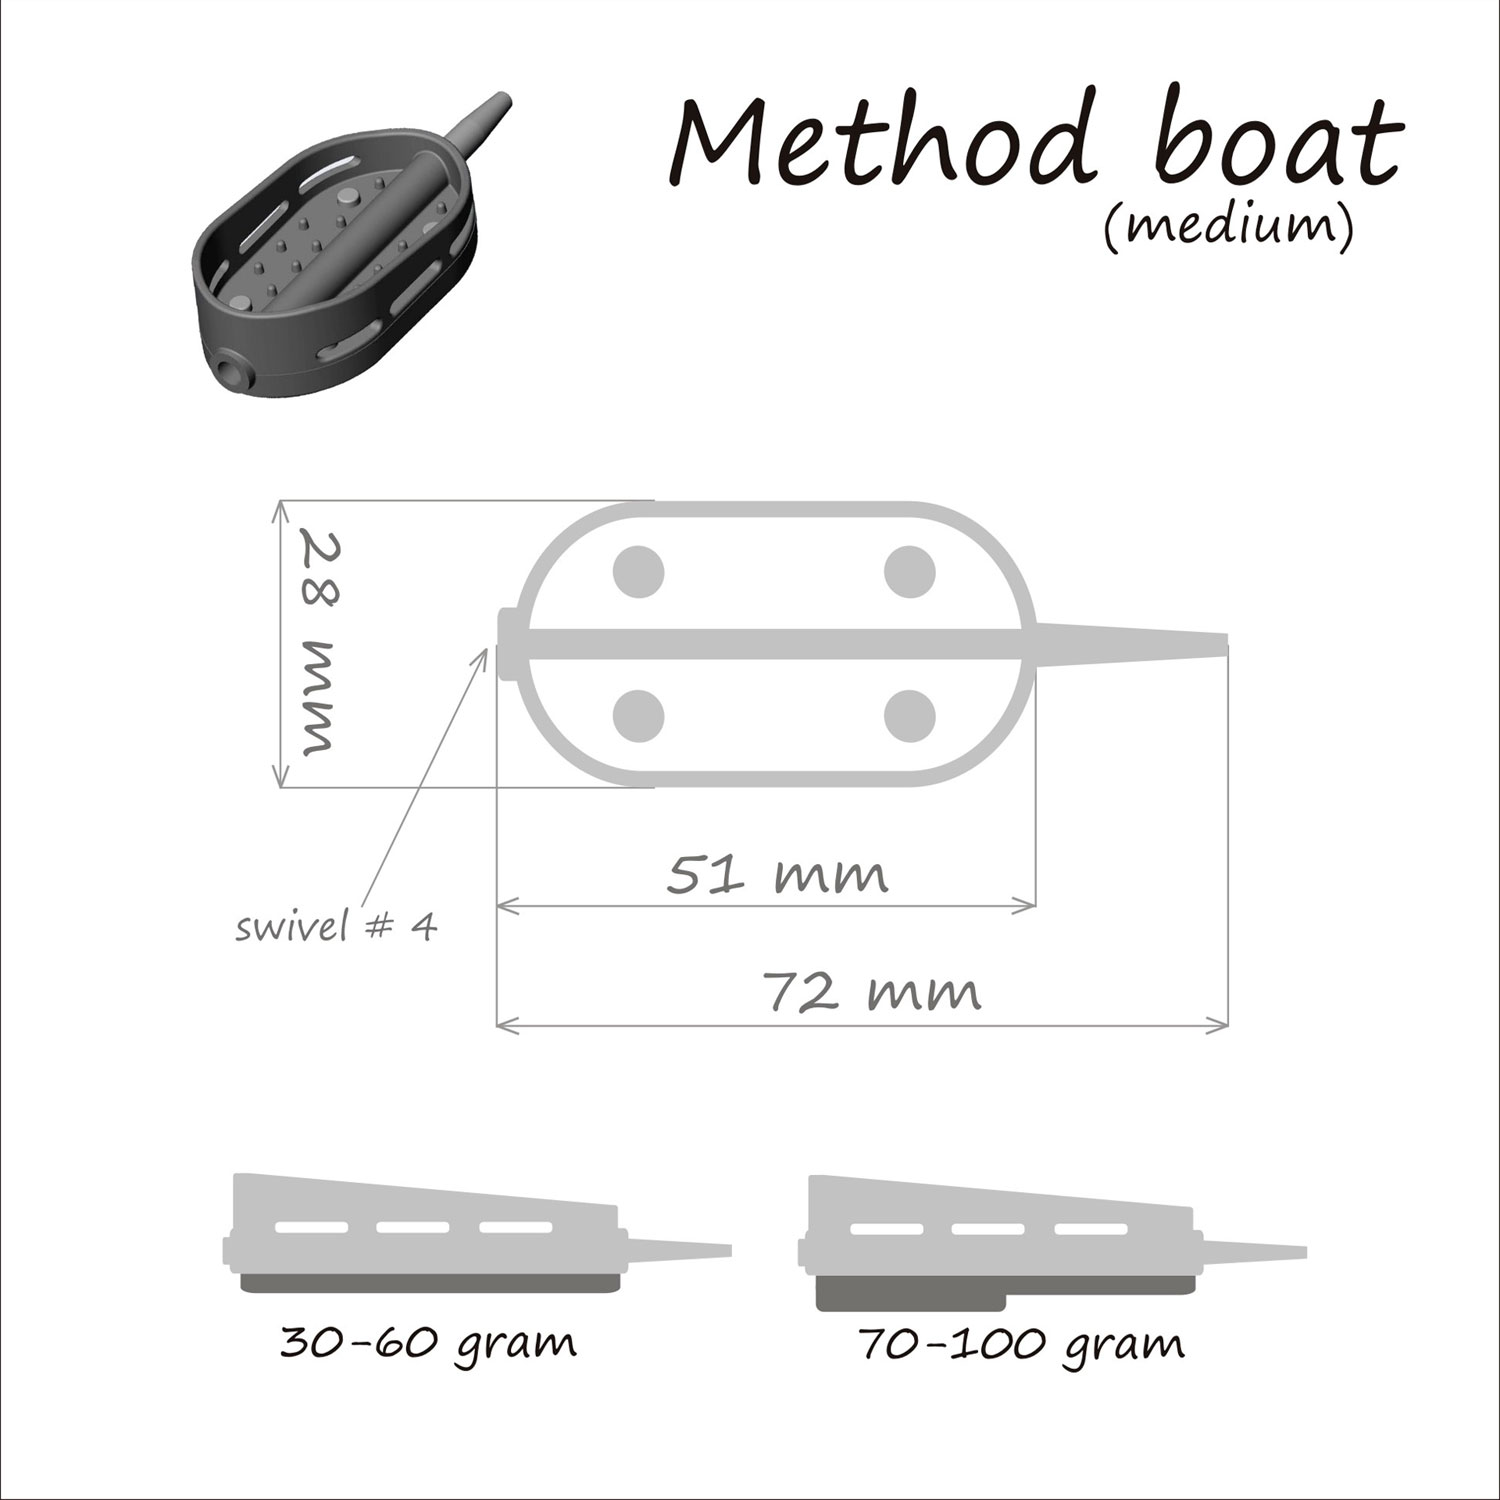 Кормушка ORANGE Boat Flat Method, 60 гр, в тех. уп. 10 шт